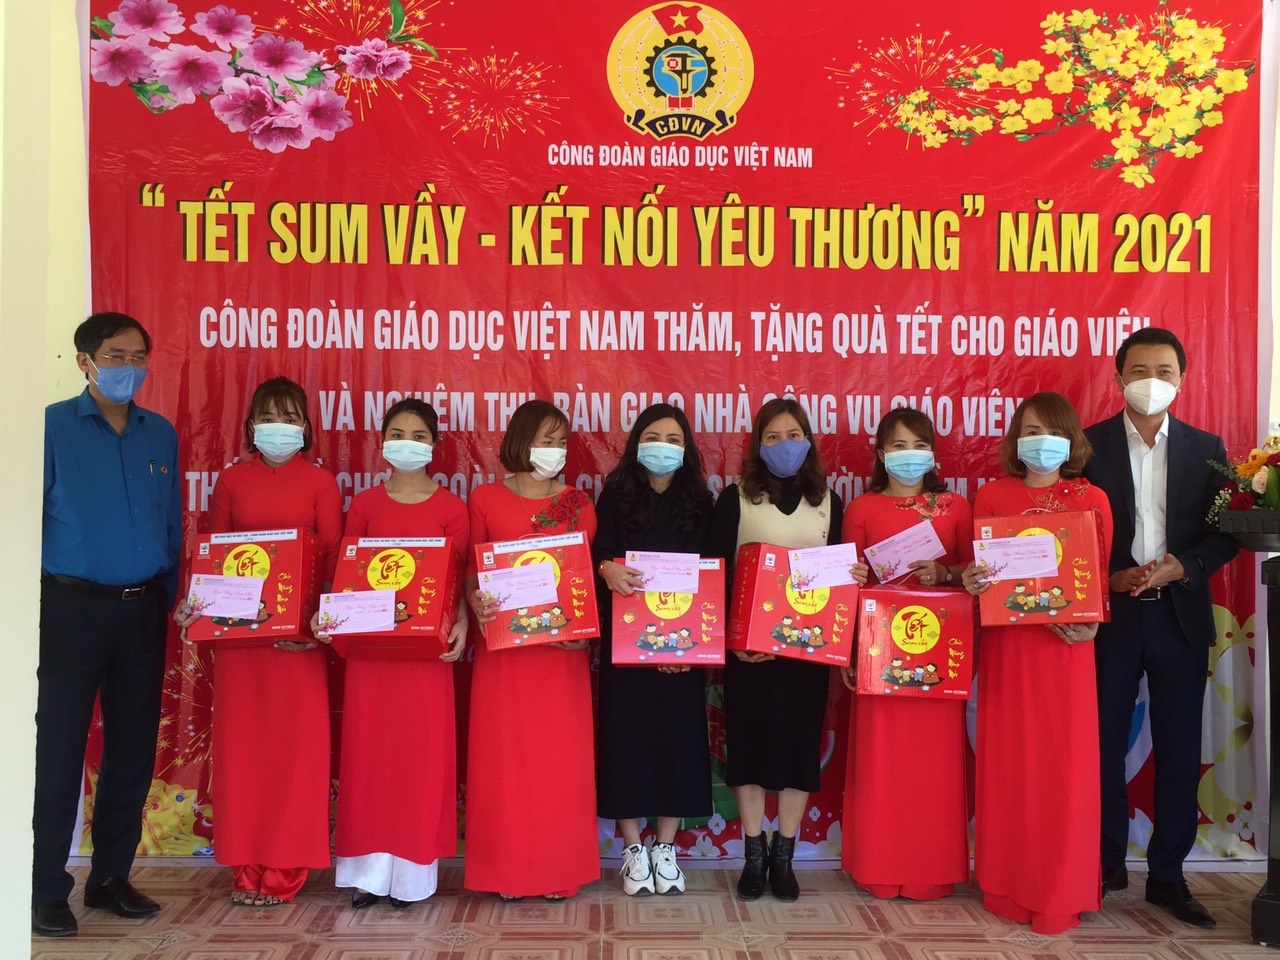 “Tết Sum vầy – Kết nối yêu thương” đến với giáo viên và học sinh vùng biên giới tỉnh Quảng Trị